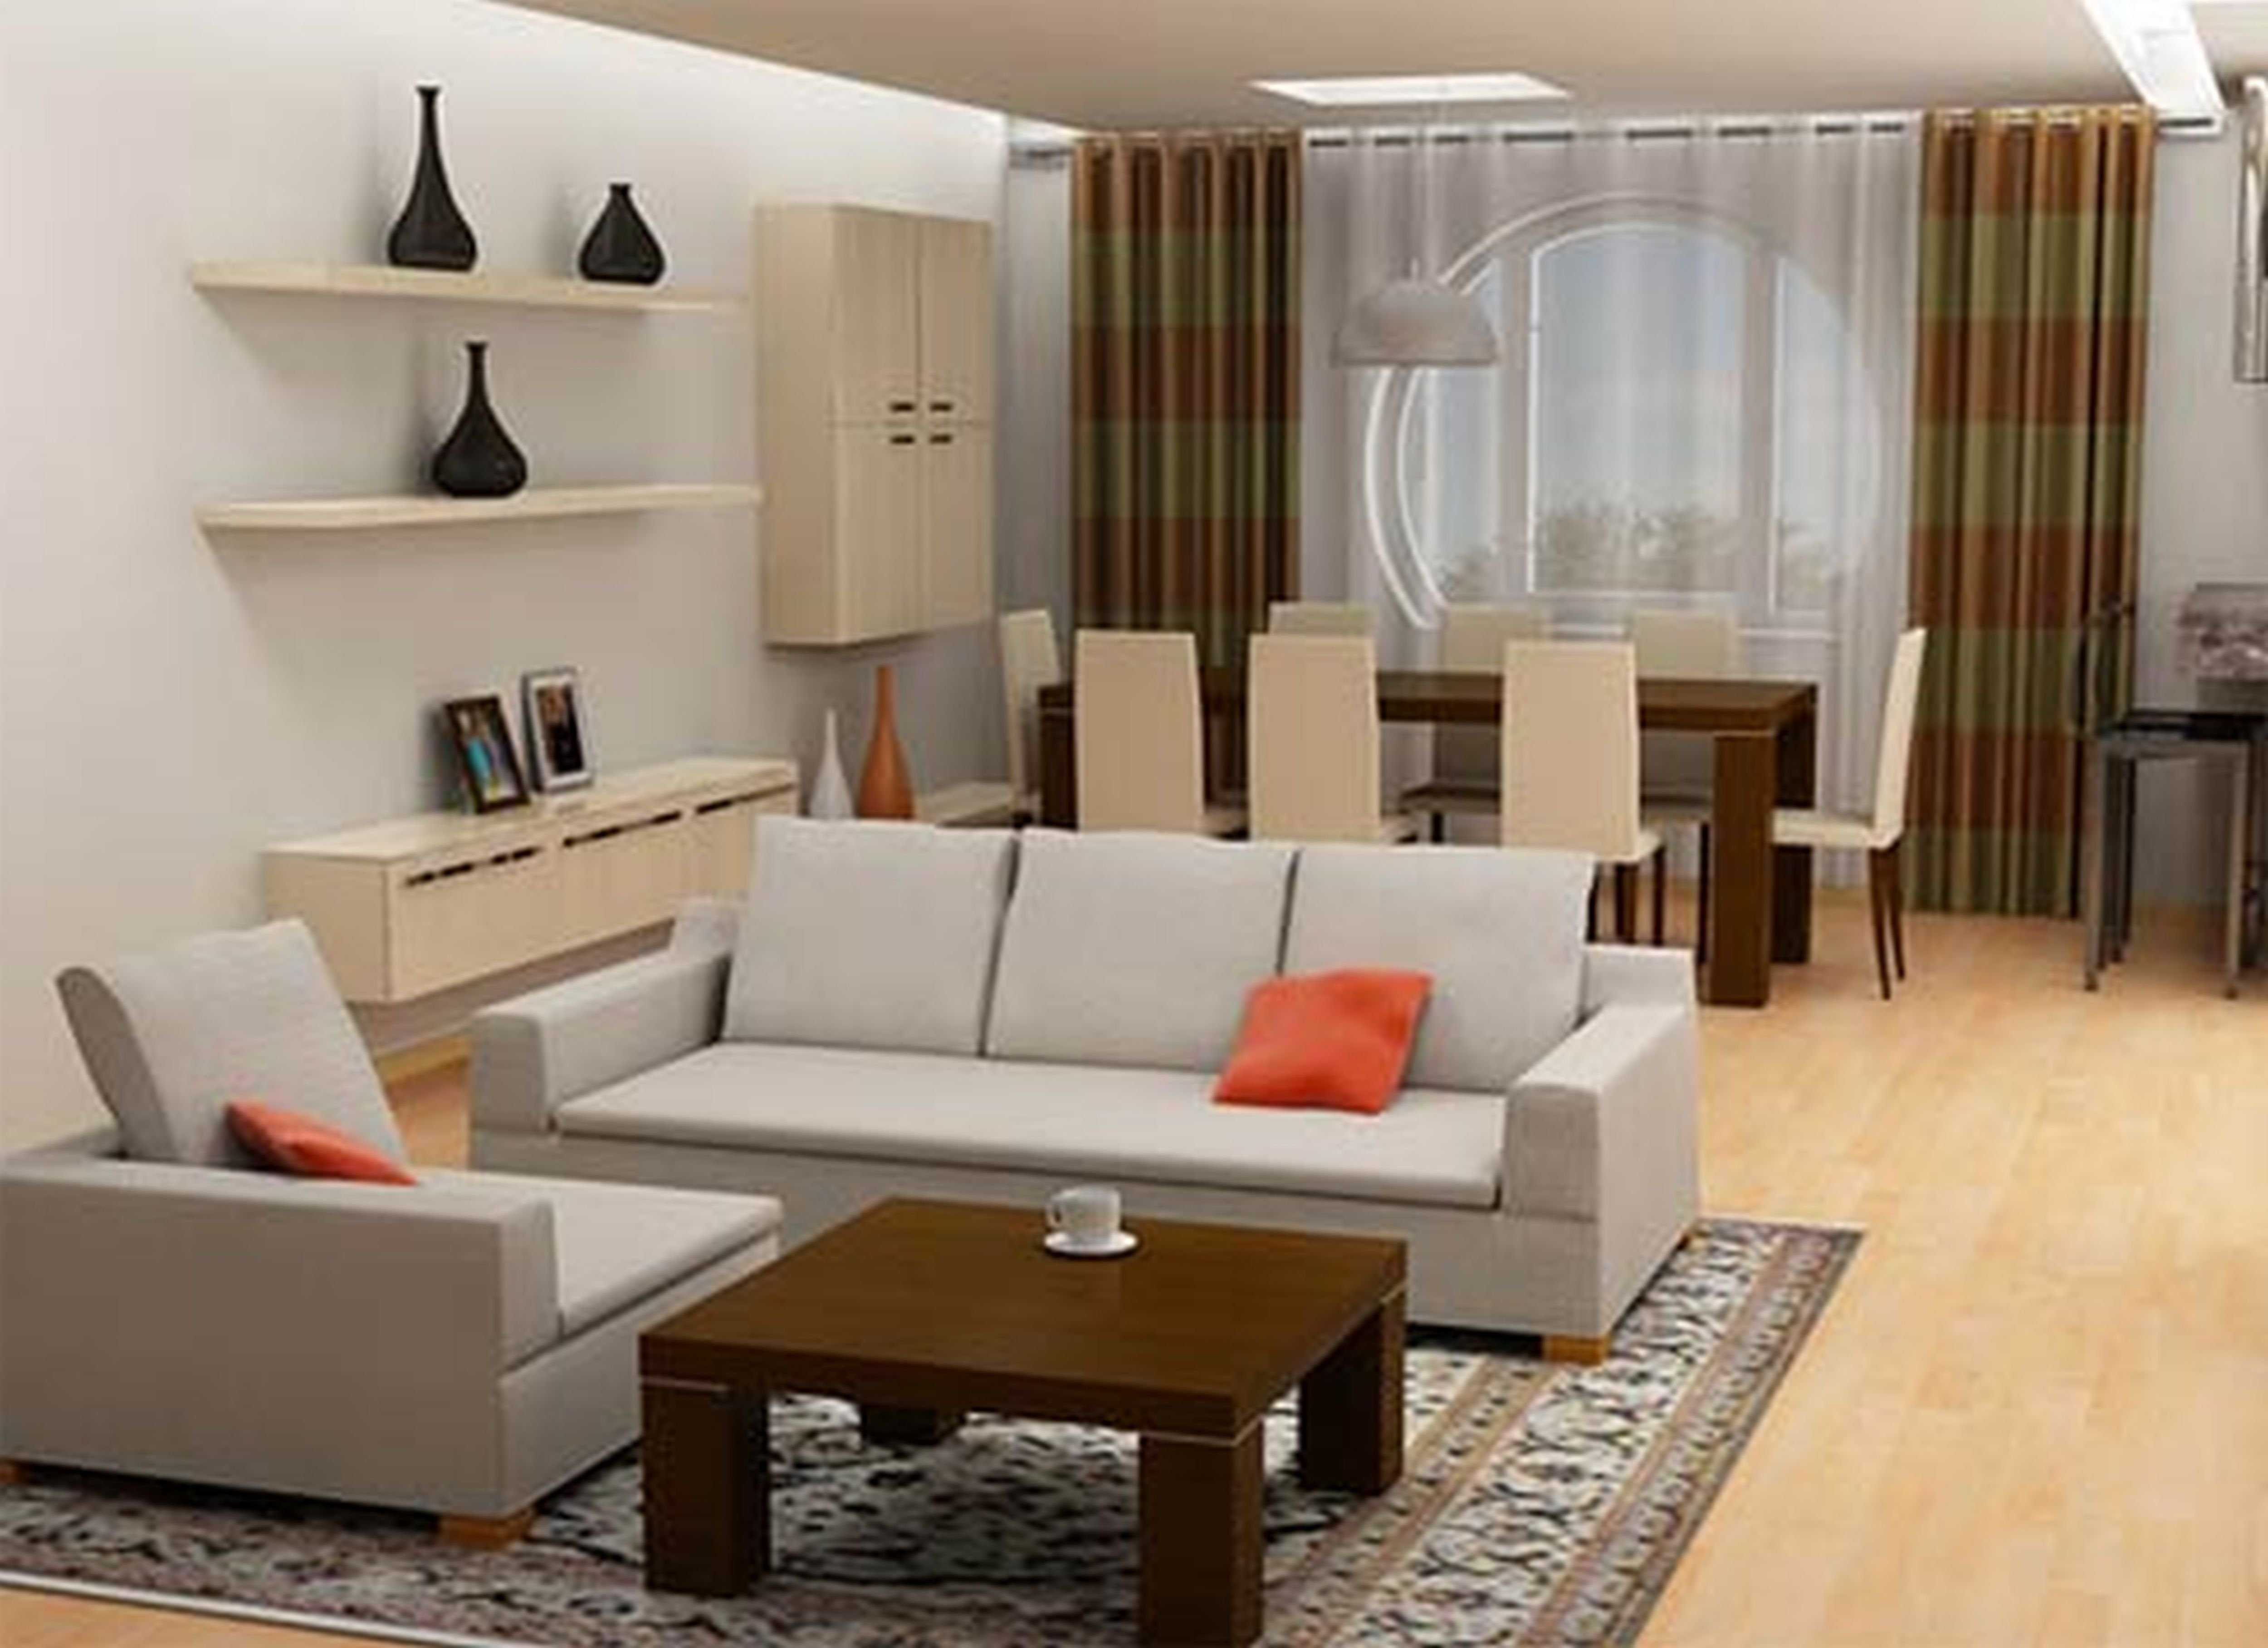 Размеры диванов как основа для создания комфортного интерьера